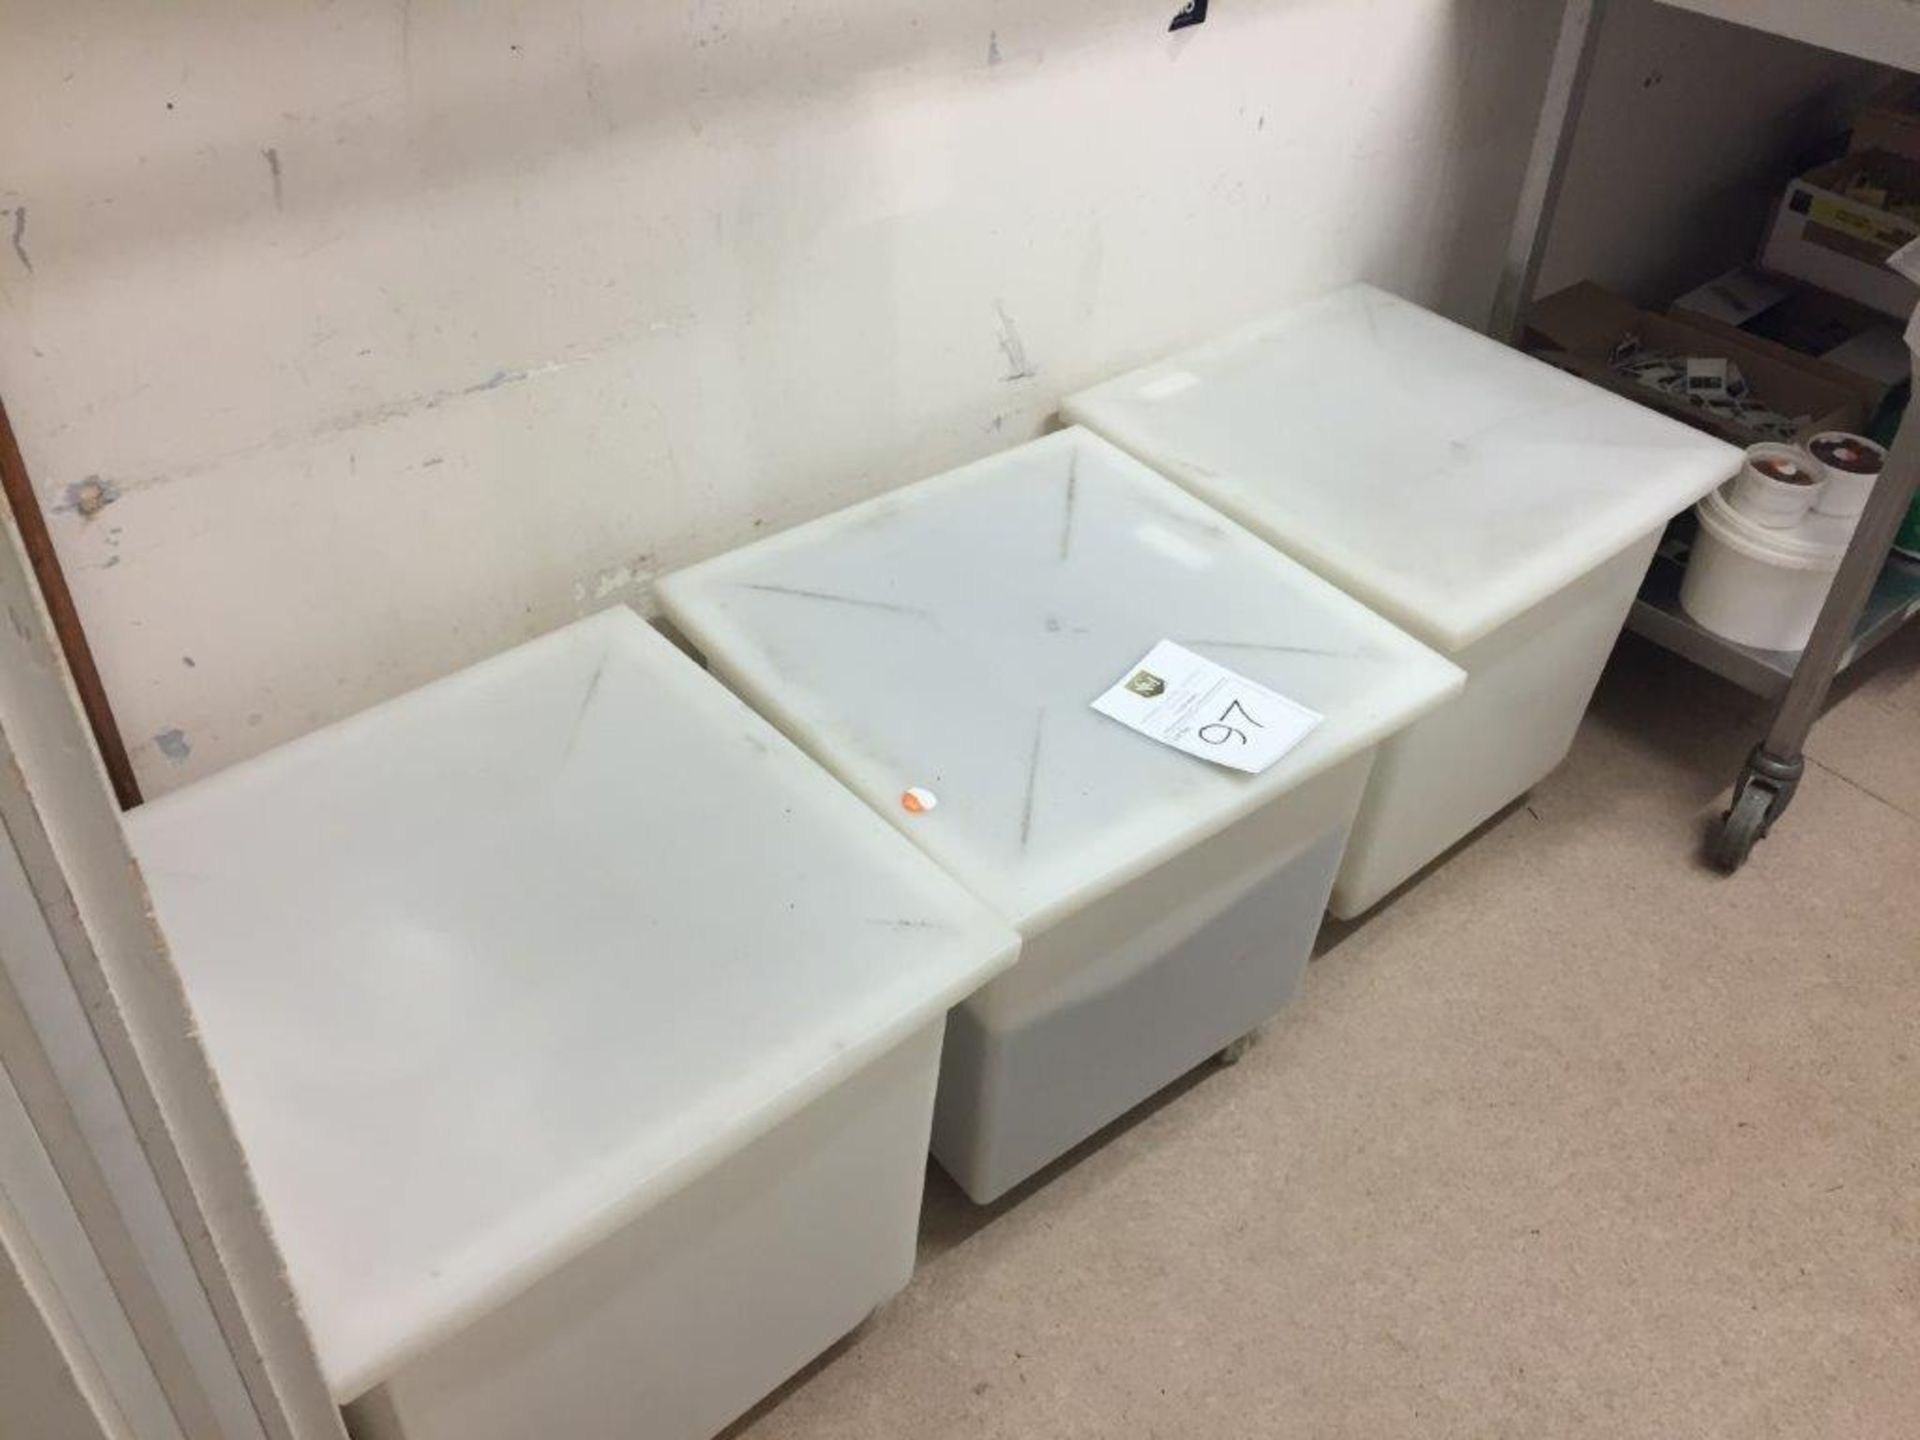 3 x plastic food bins